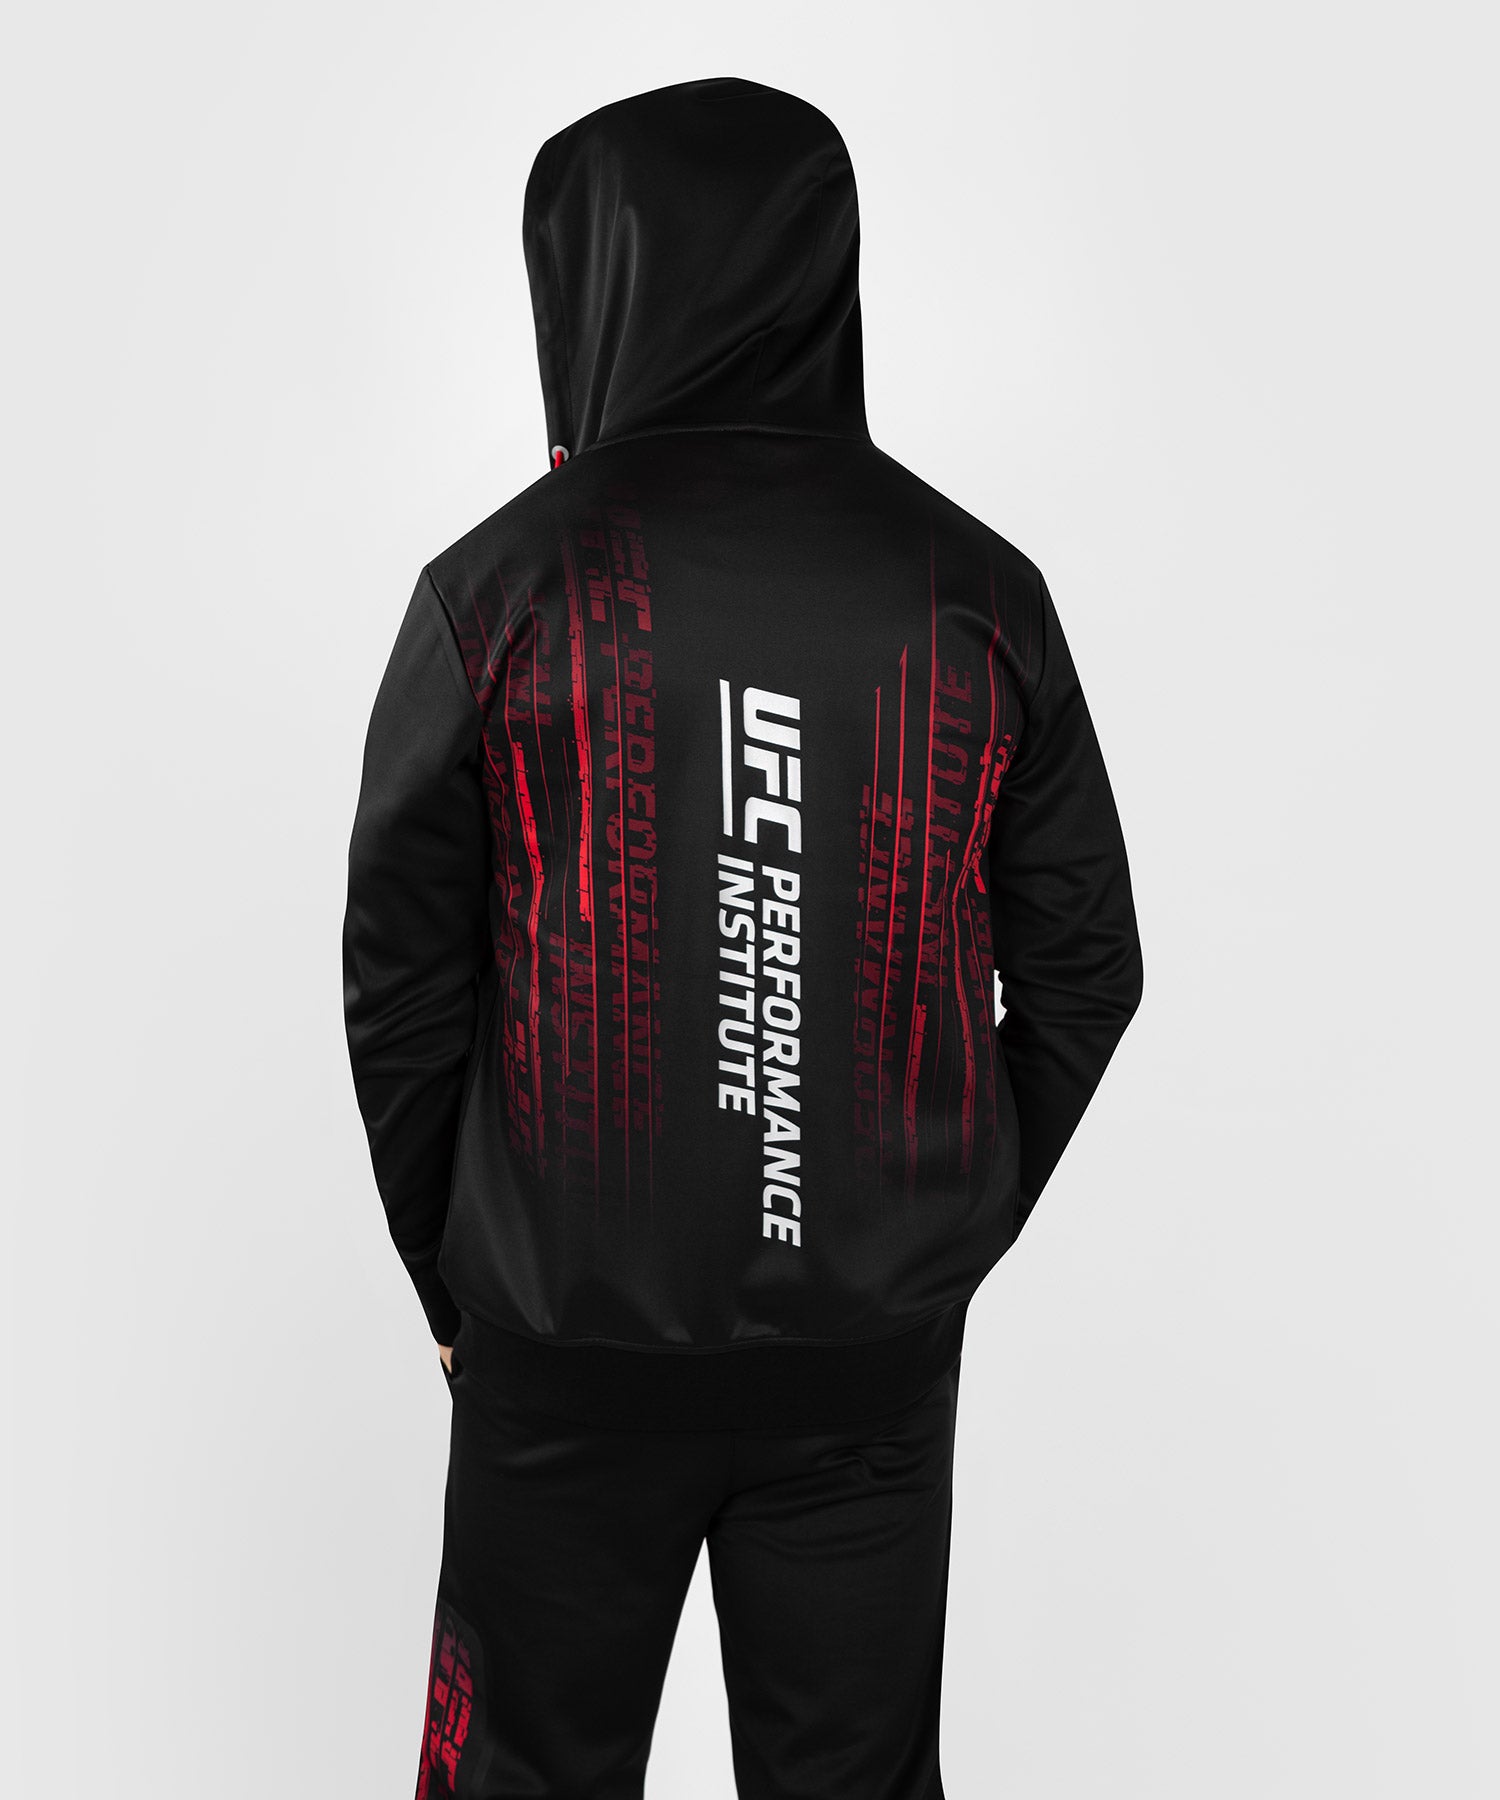 Sweatshit à capuche UFC Venum  Performance Institute 2.0  - Noir/Rouge - Sweatshirts